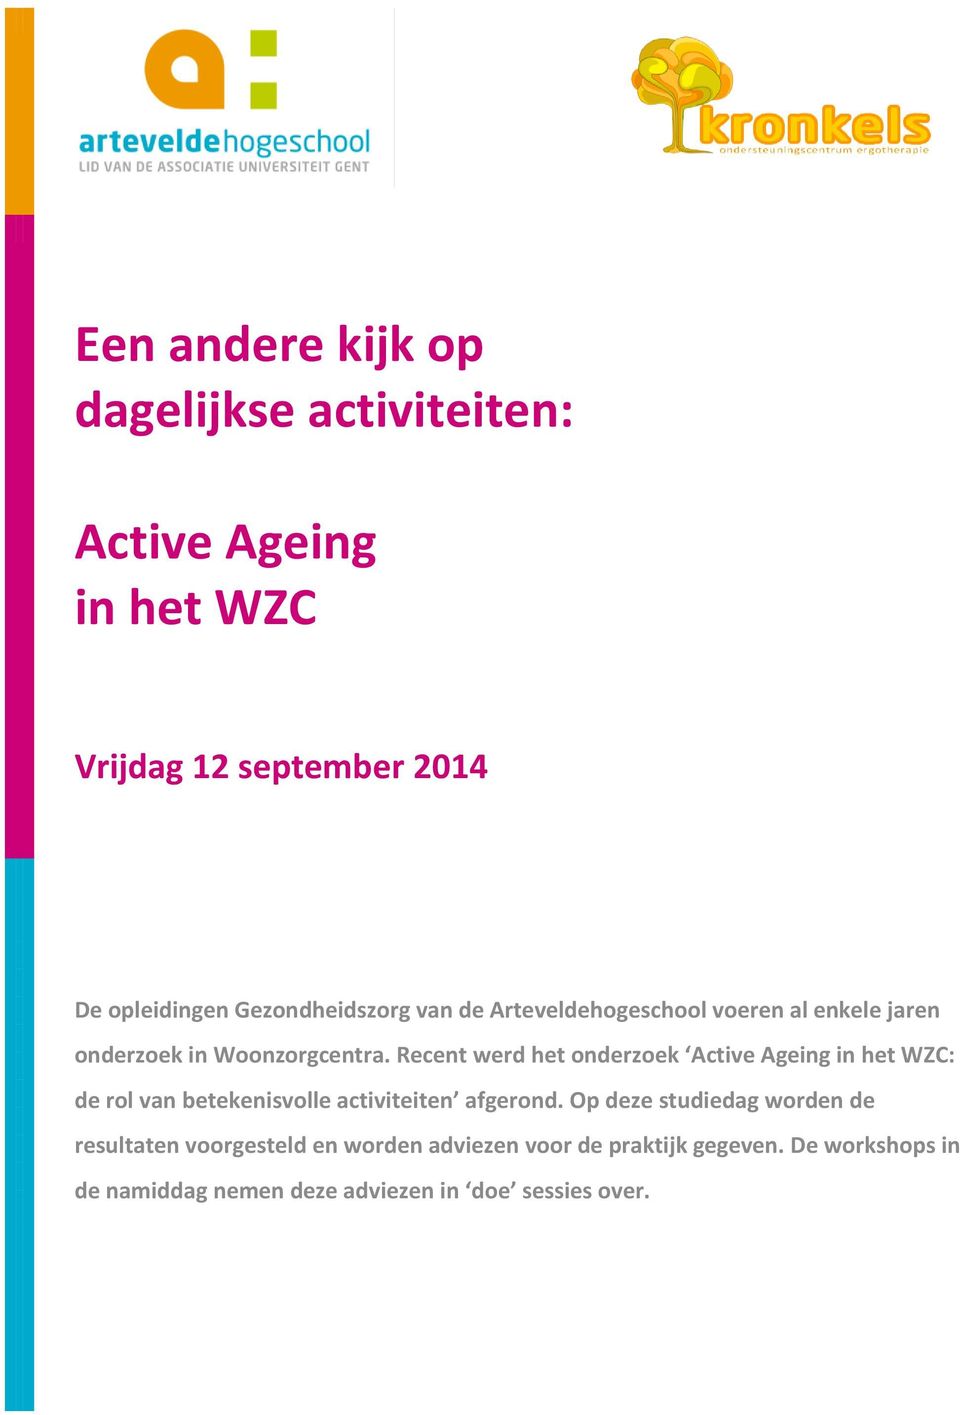 Recent werd het onderzoek Active Ageing in het WZC: de rol van betekenisvolle activiteiten afgerond.